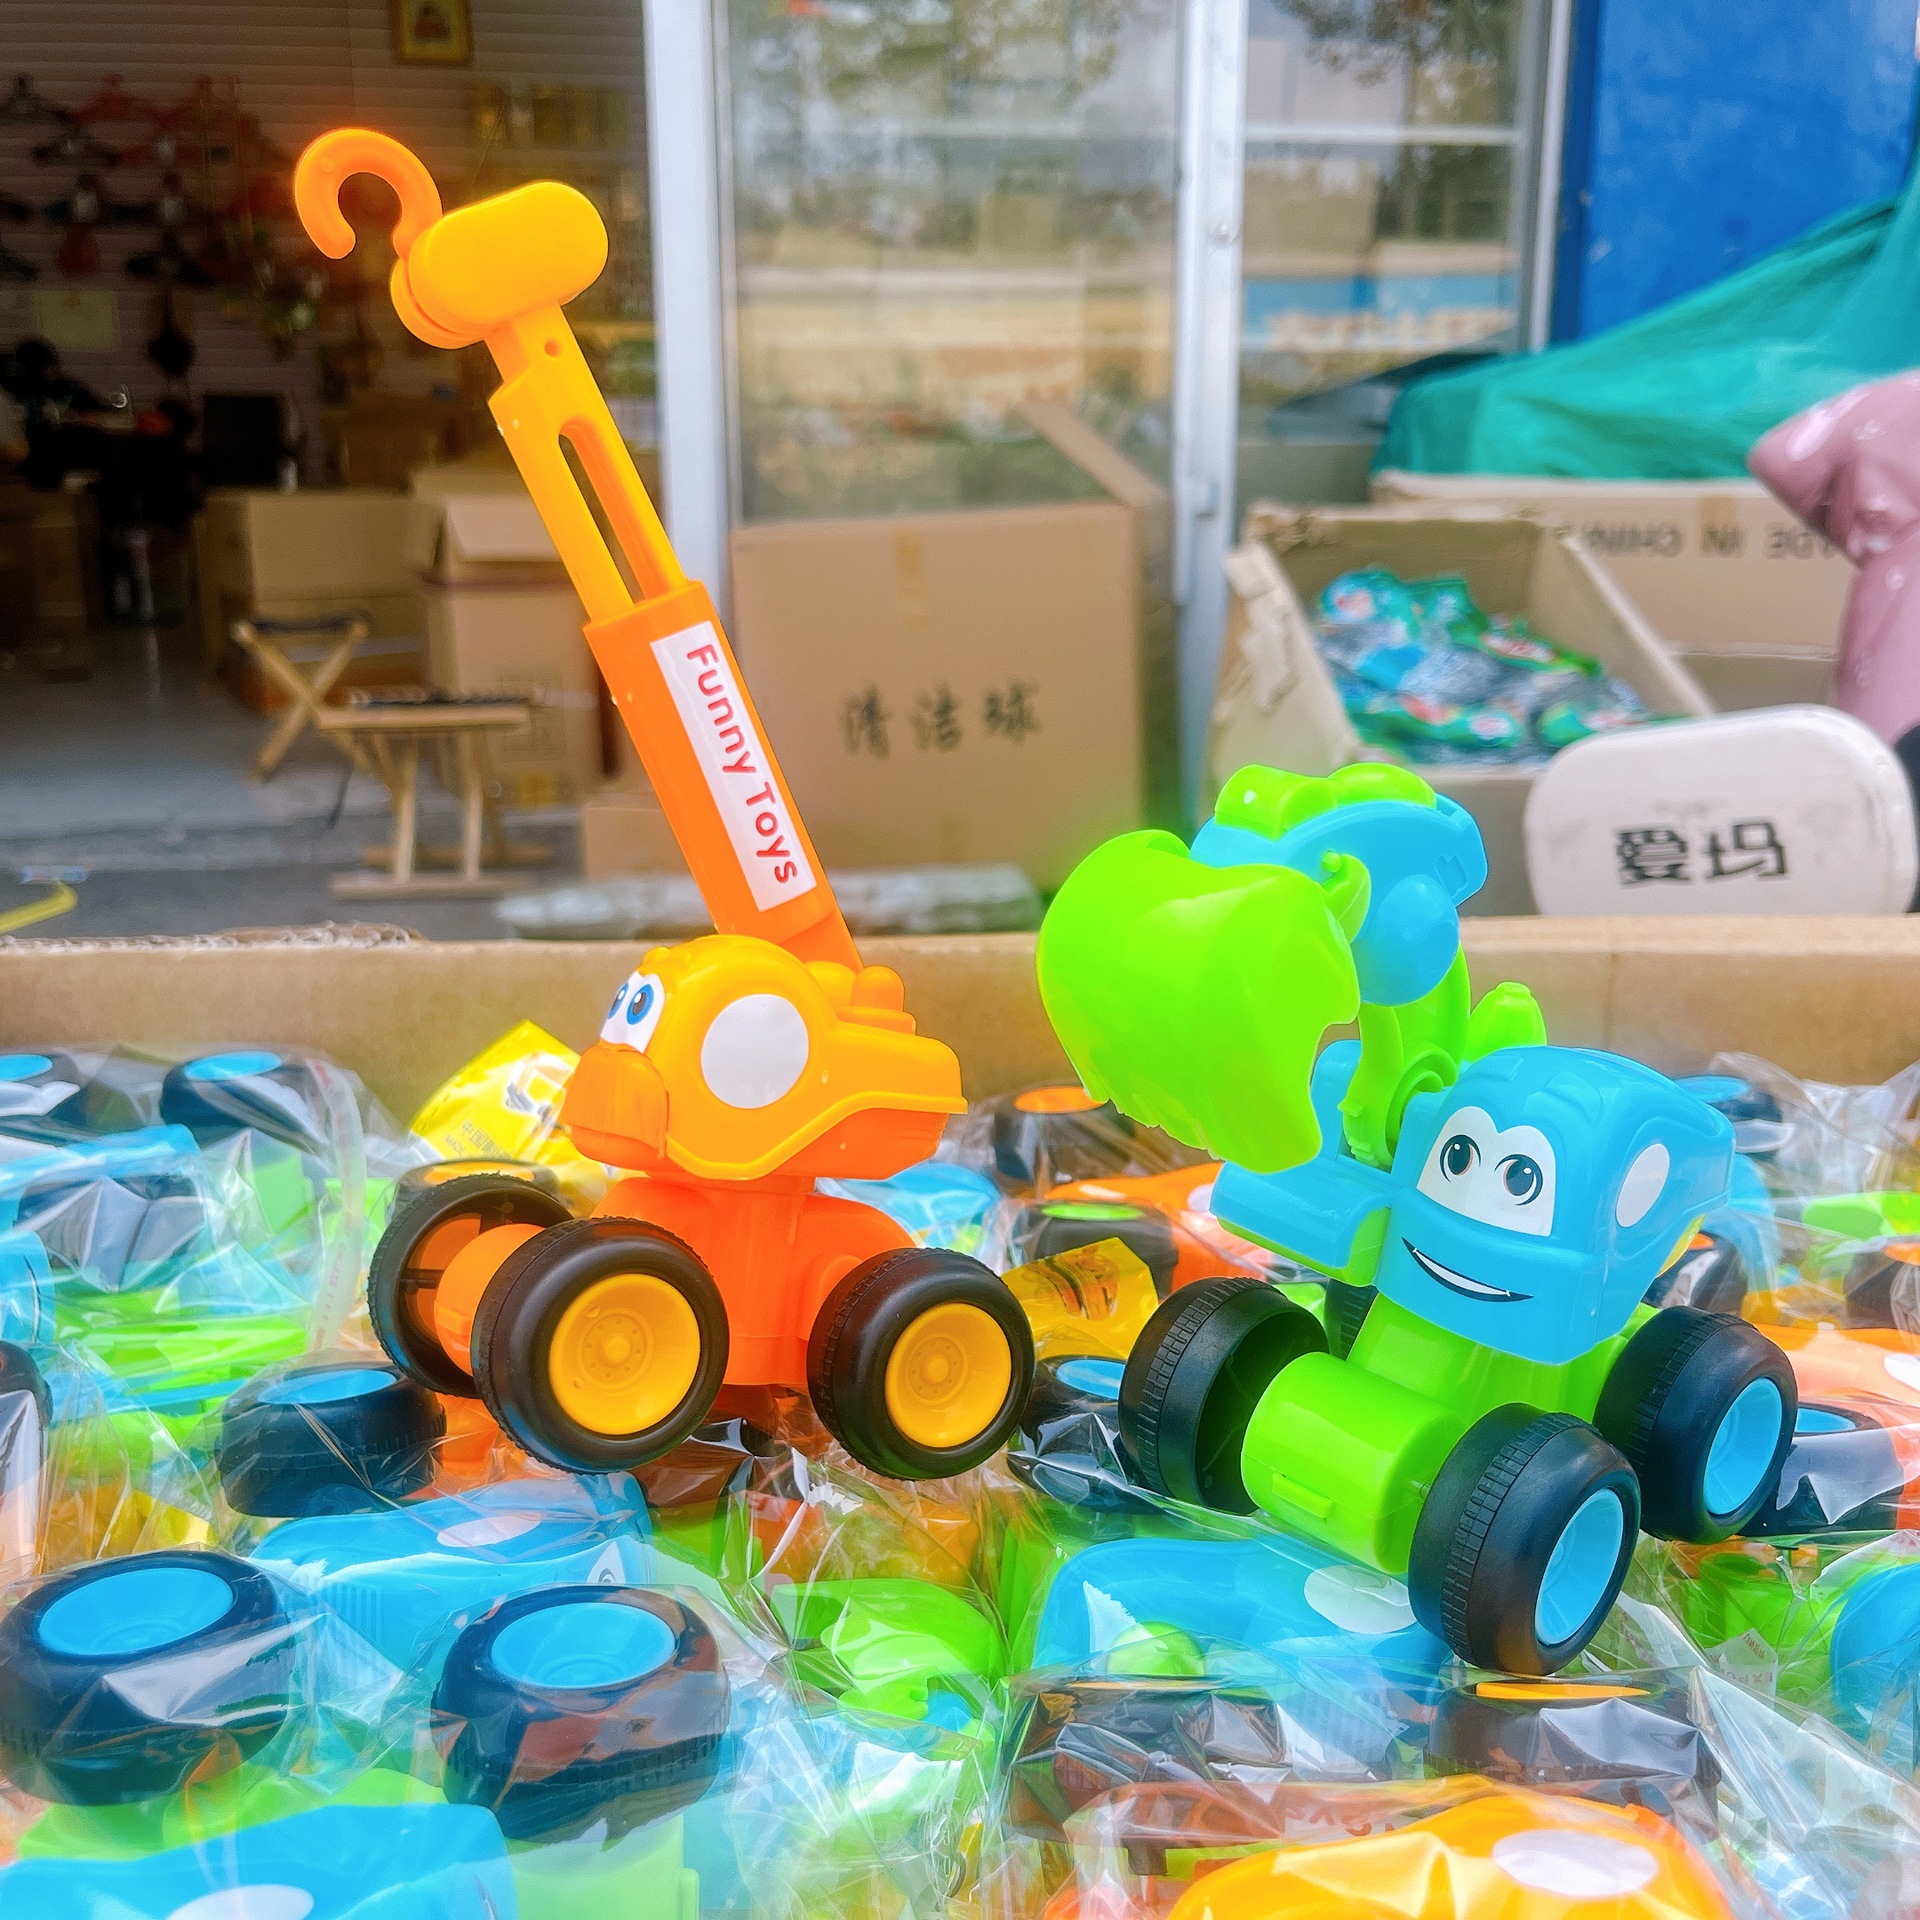 热销工程消防模型车男孩铲车玩具儿童吊车惯性玩具车两元店批发